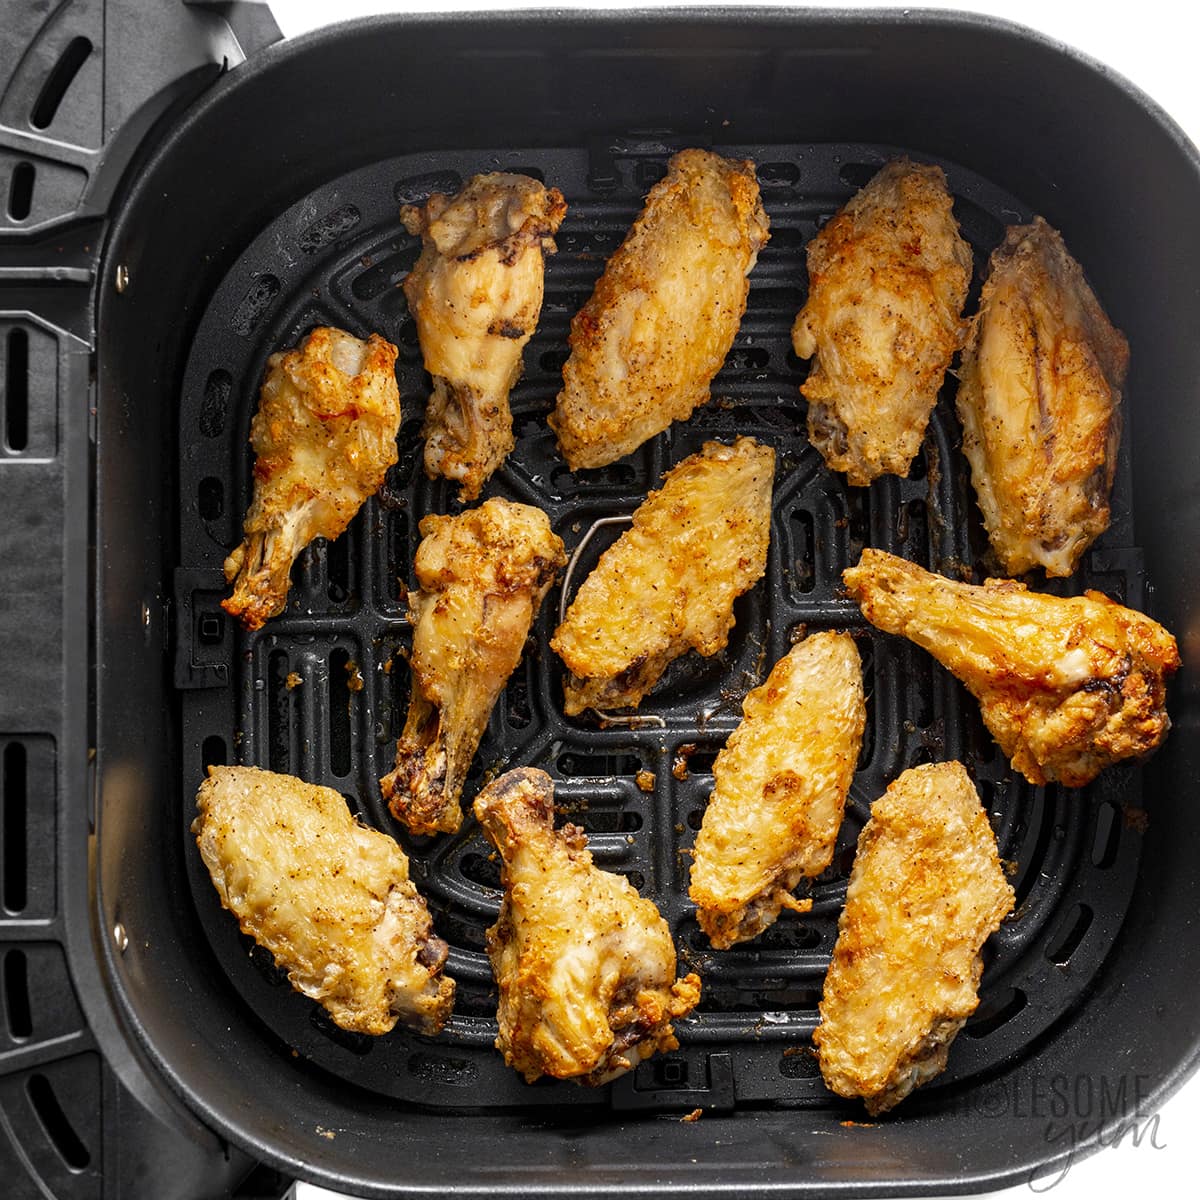 Crispy chicken wings in an air fryer basket.